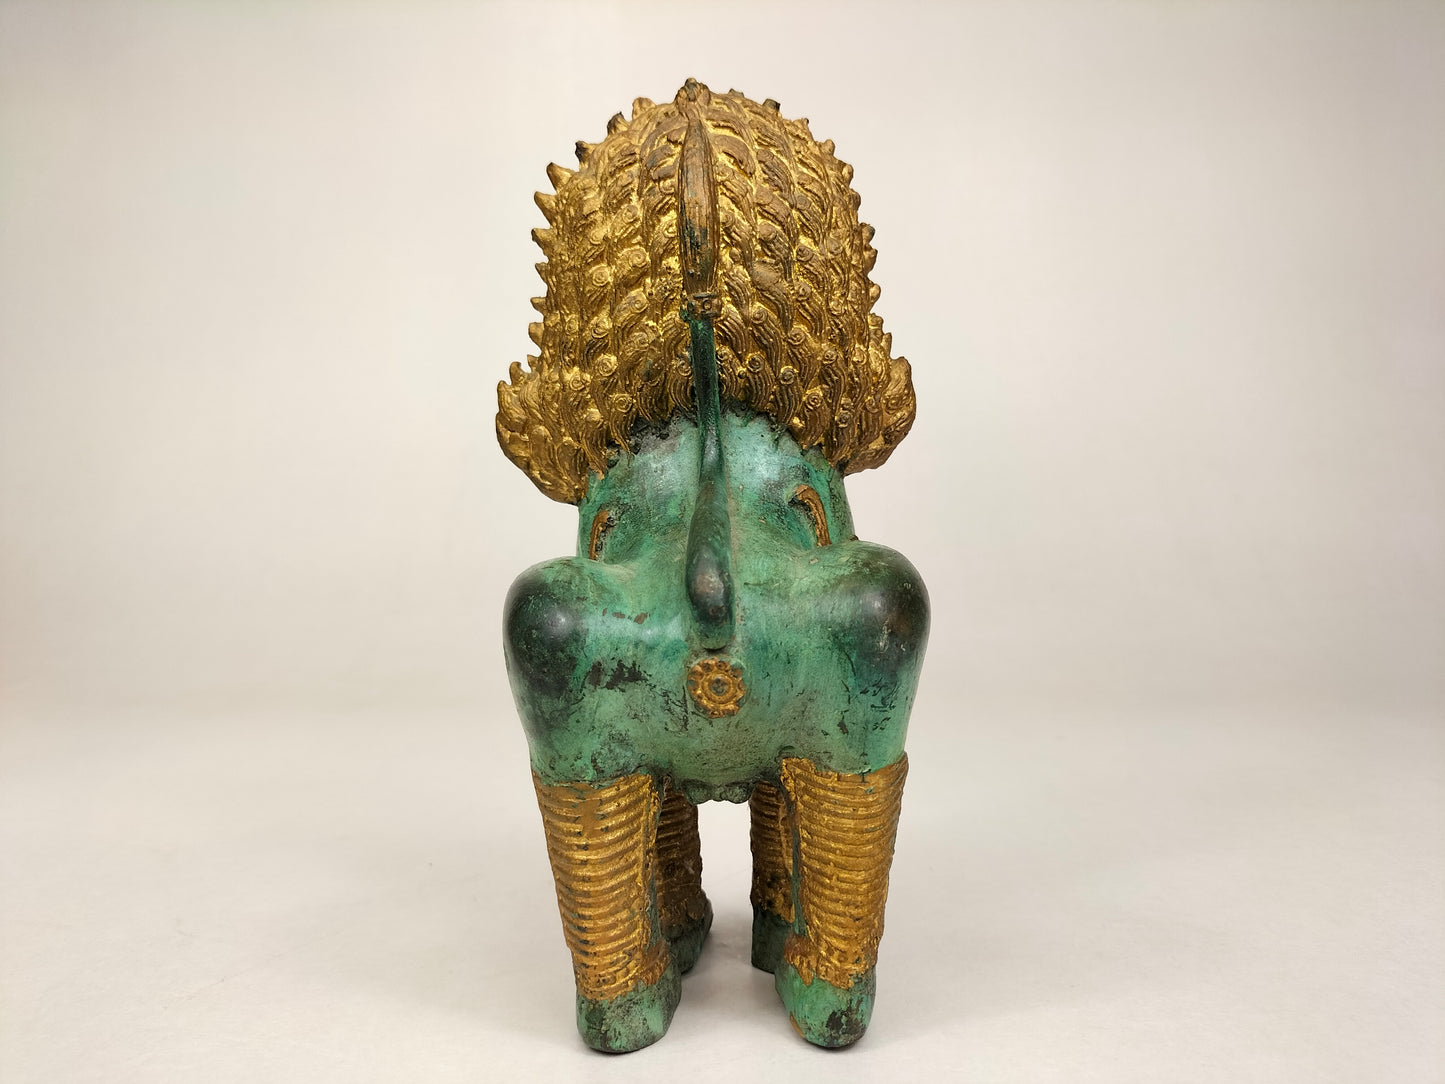 Sư tử chùa Thái mạ vàng // Thái Lan - thế kỷ 20